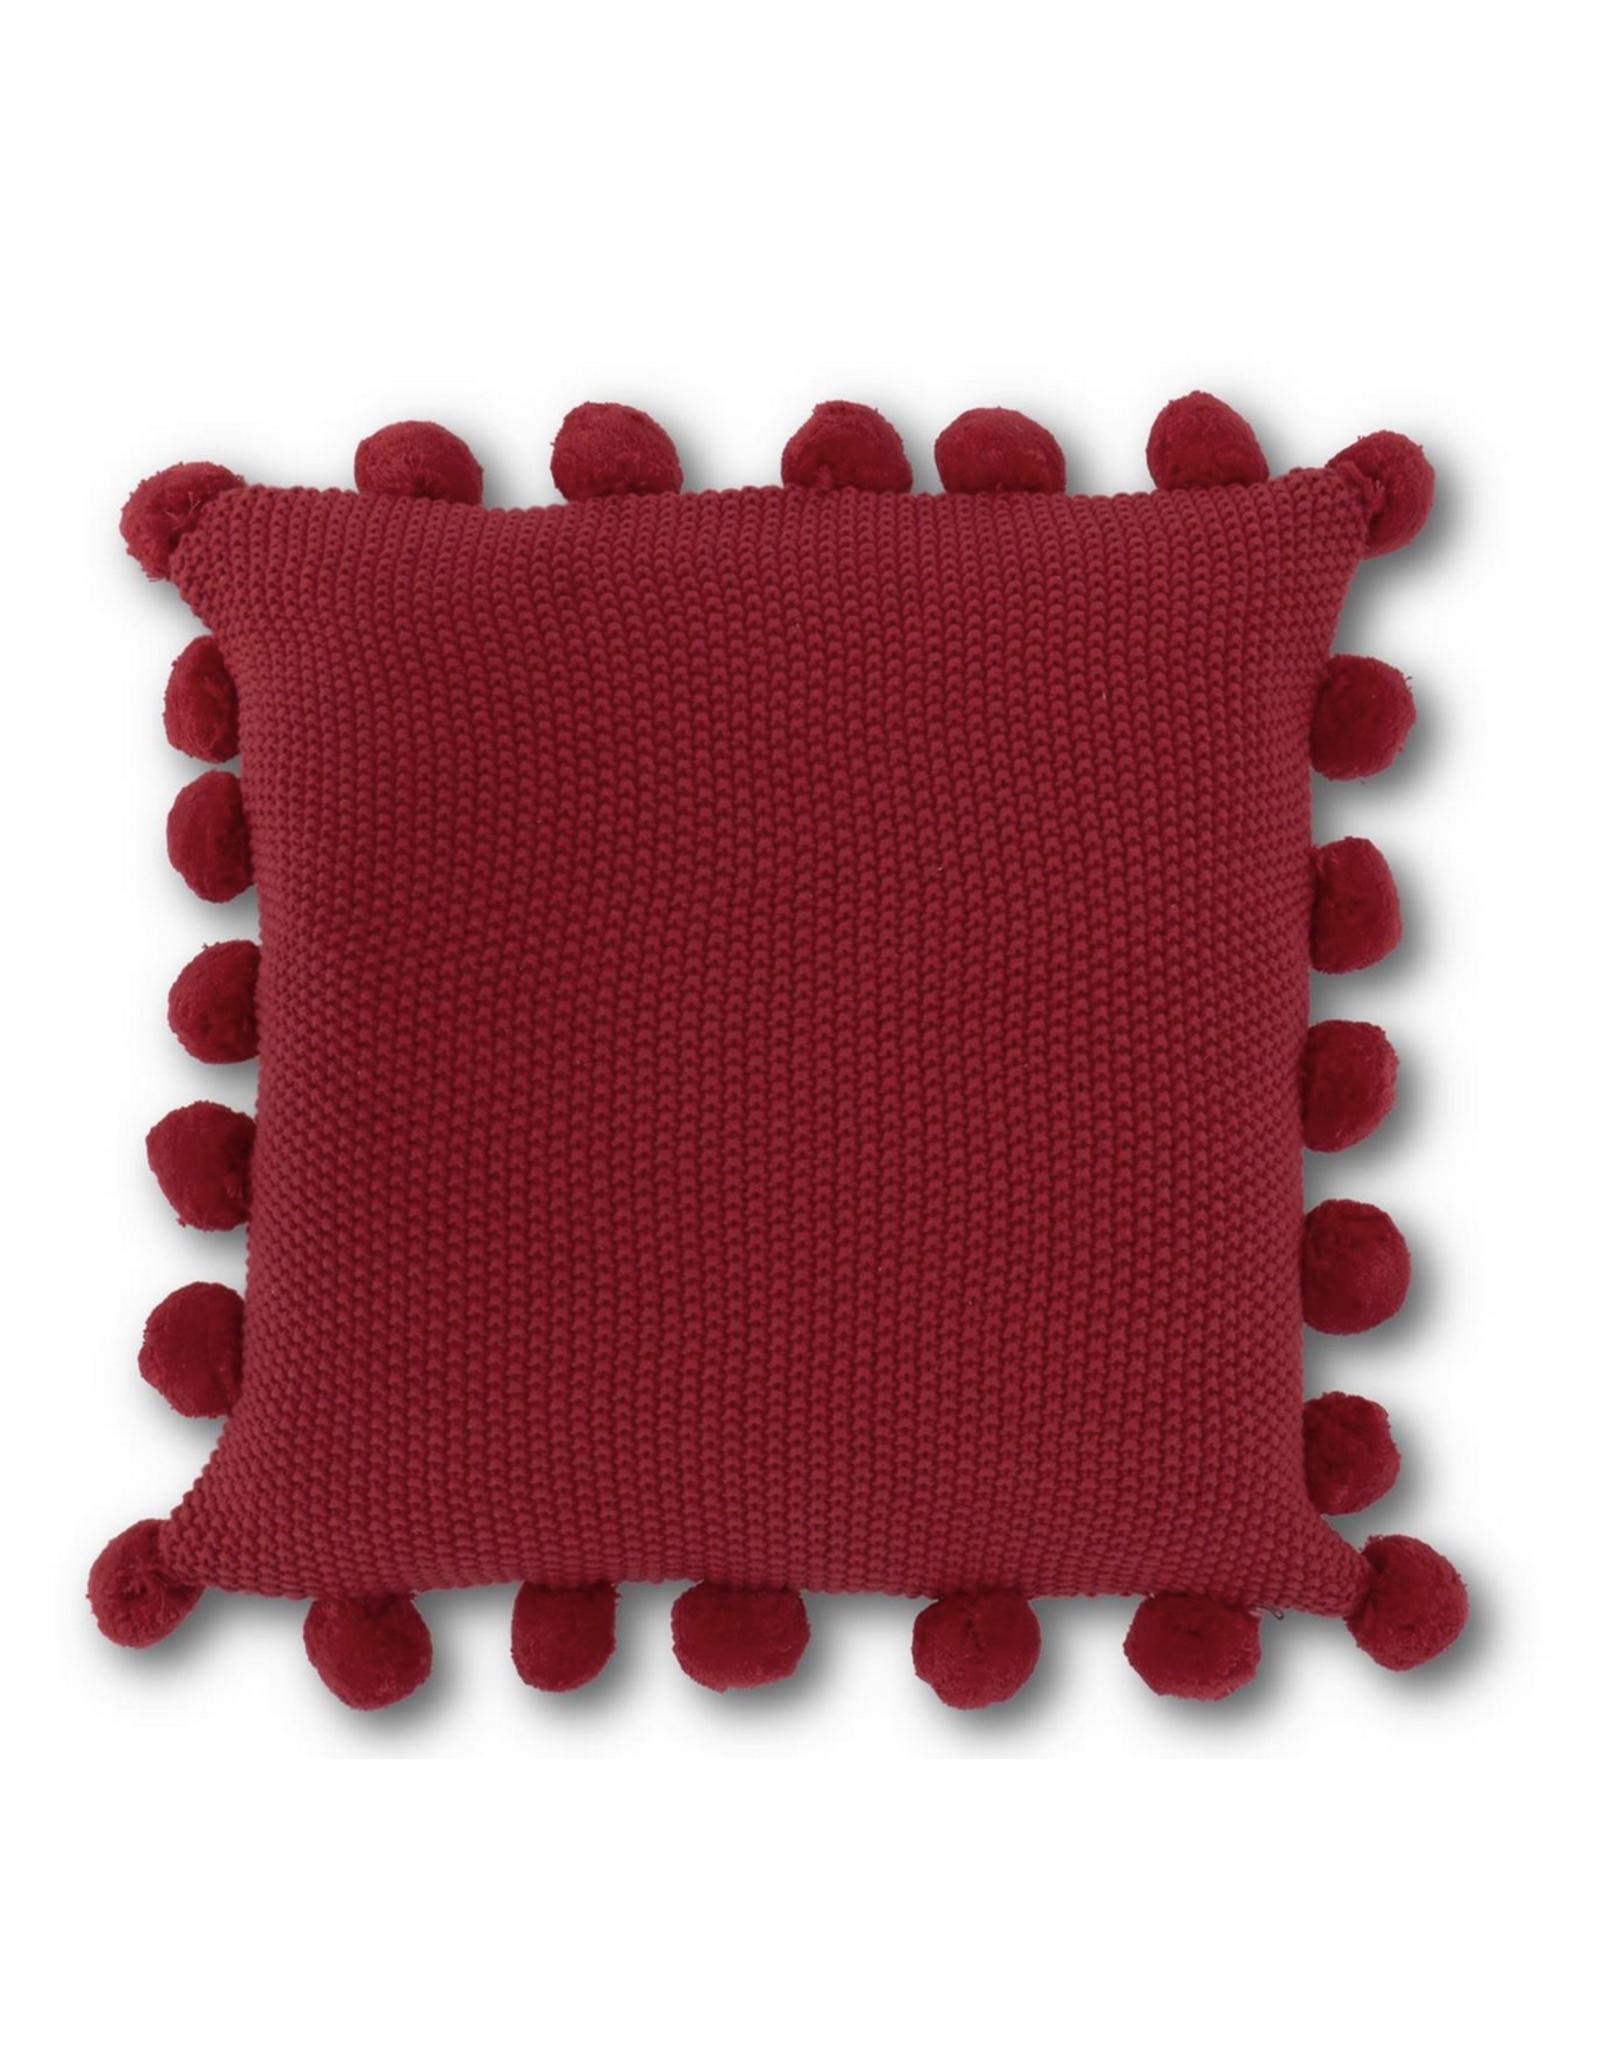 K & K Moss Stitch Knit Pillow with Pompom Trim